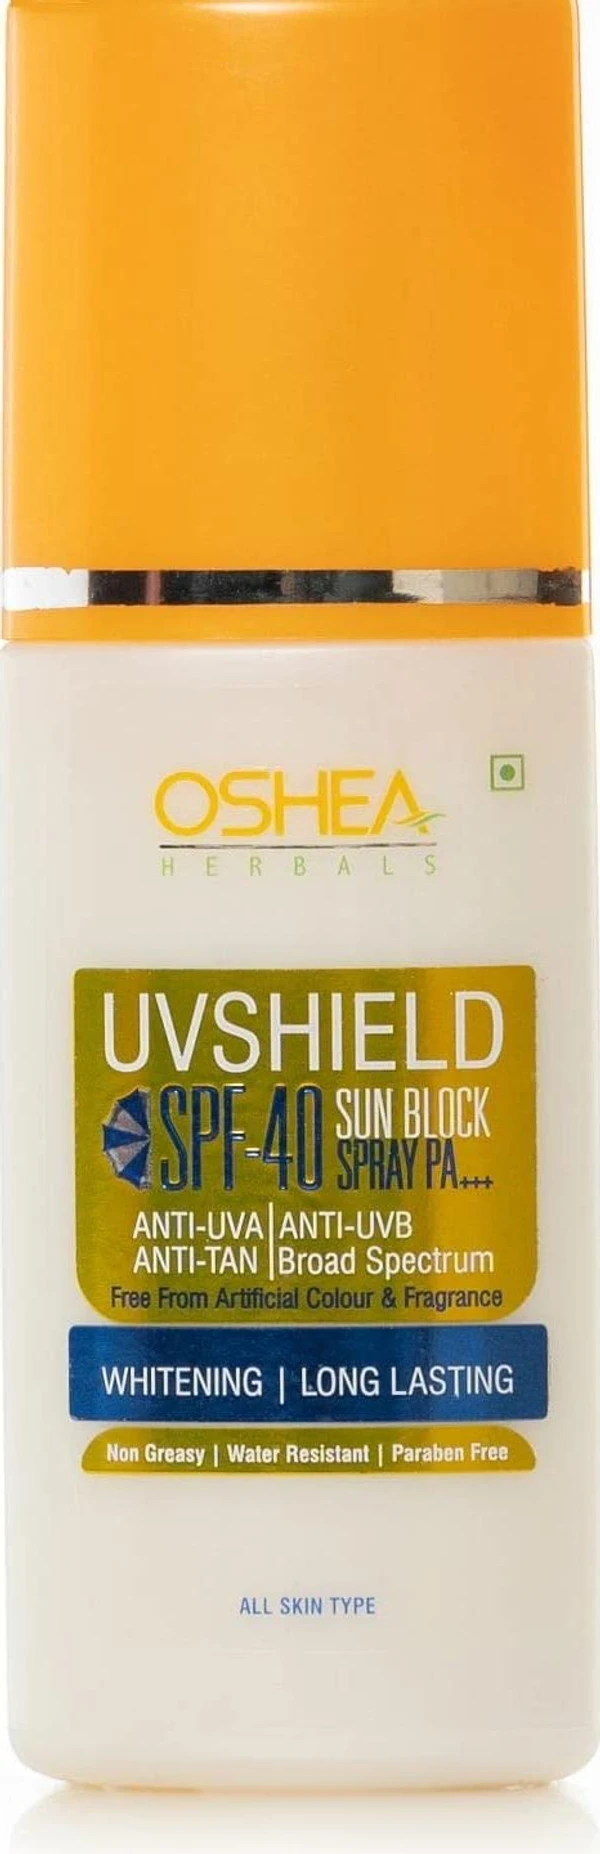 Oshea Herbals UVShield Sun Block Spray SPF 40